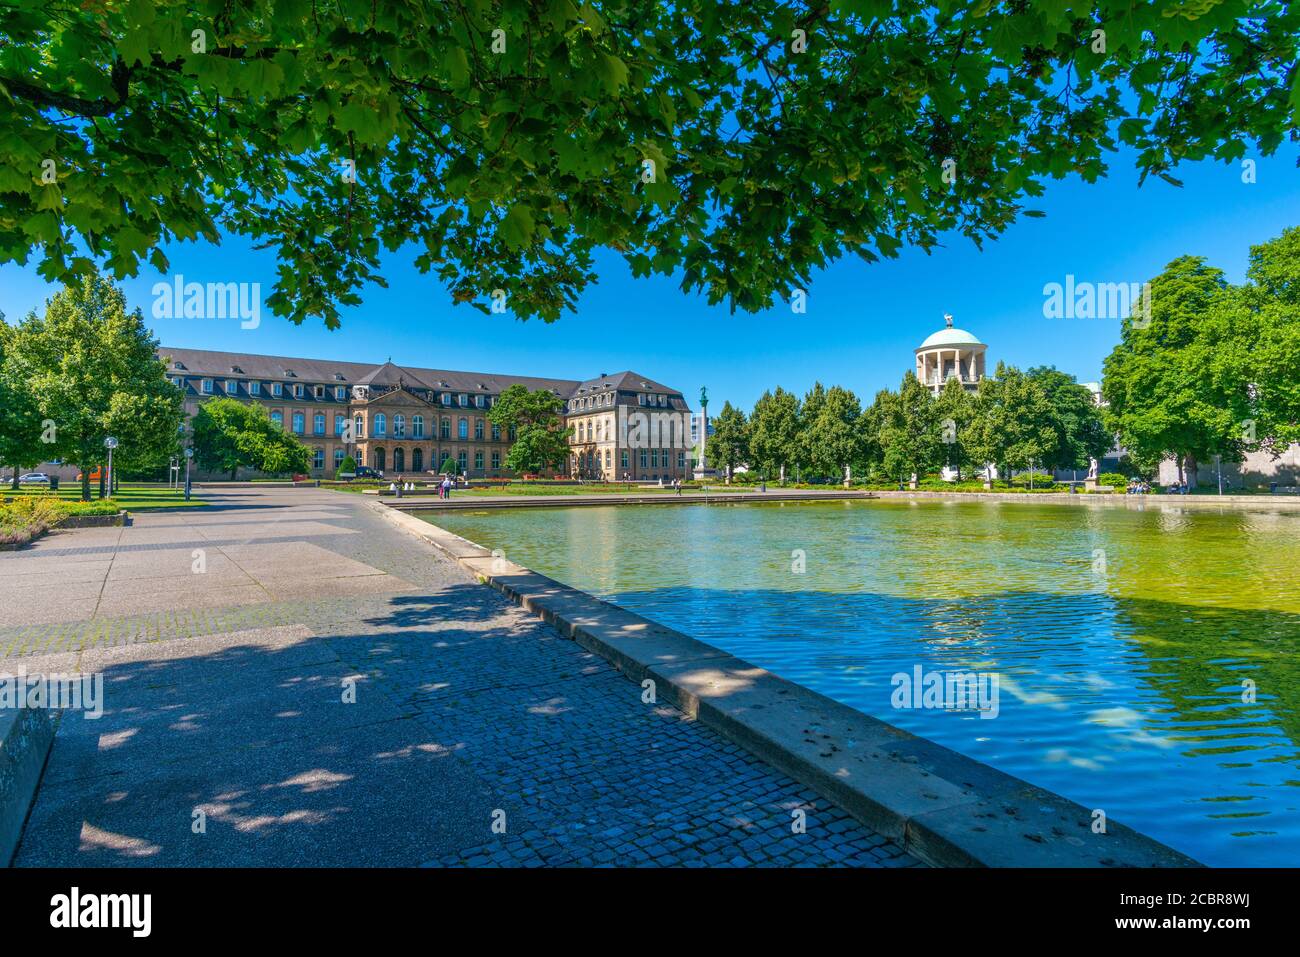 Oberer Schlossgarten o Giardino del Castello superiore, Stoccarda, Stato federale Baden-Württemberg, Germania del Sud, Europa Foto Stock